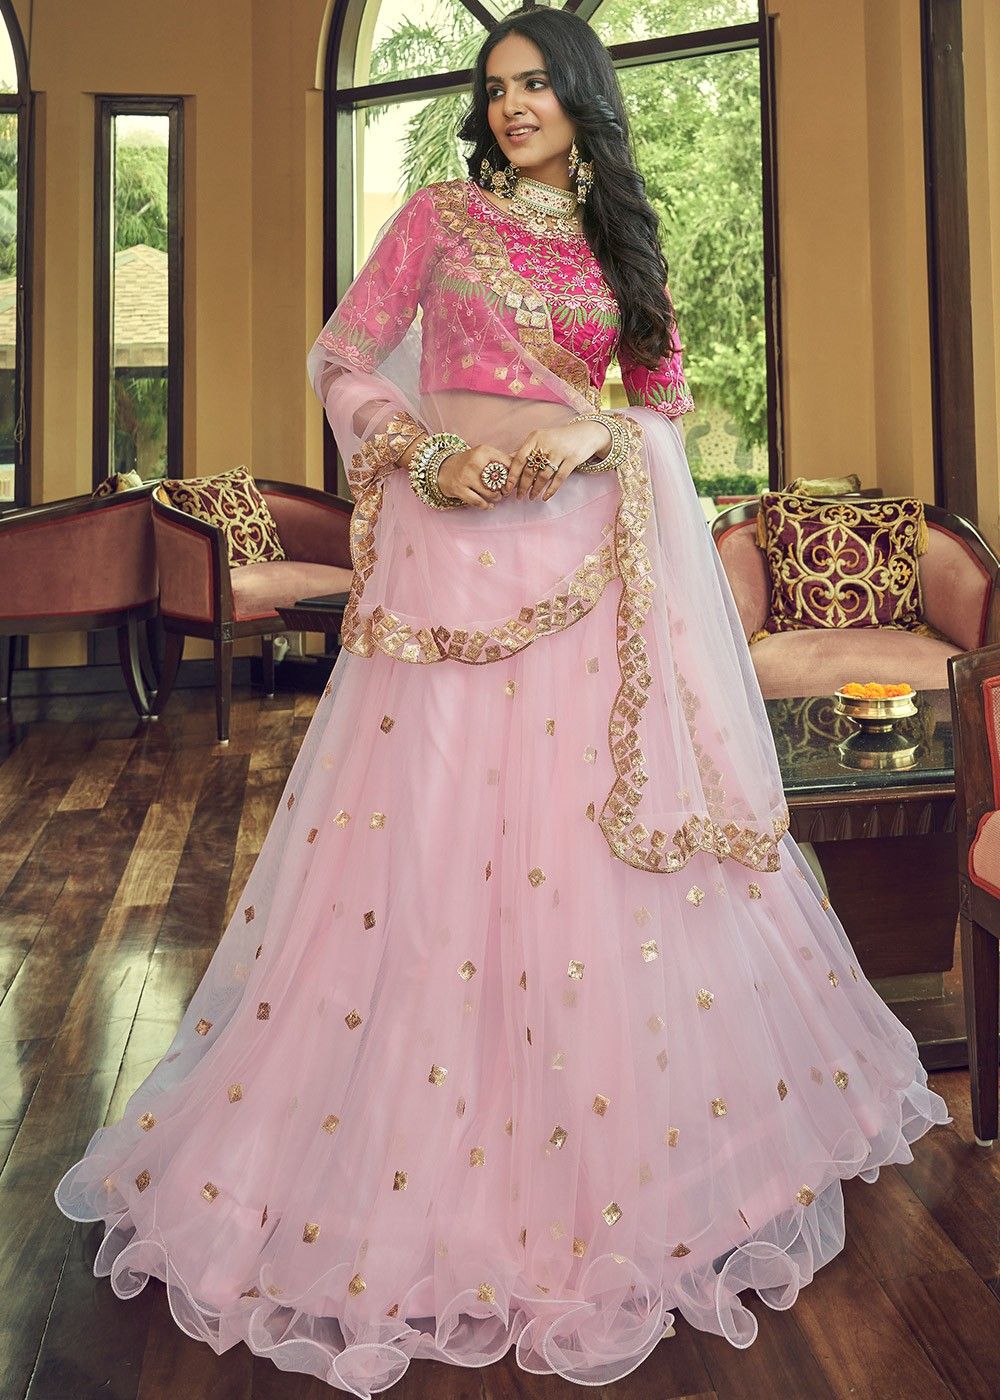 Hot Pink Lehenga Choli for Women or Girls Indian Wedding Designer